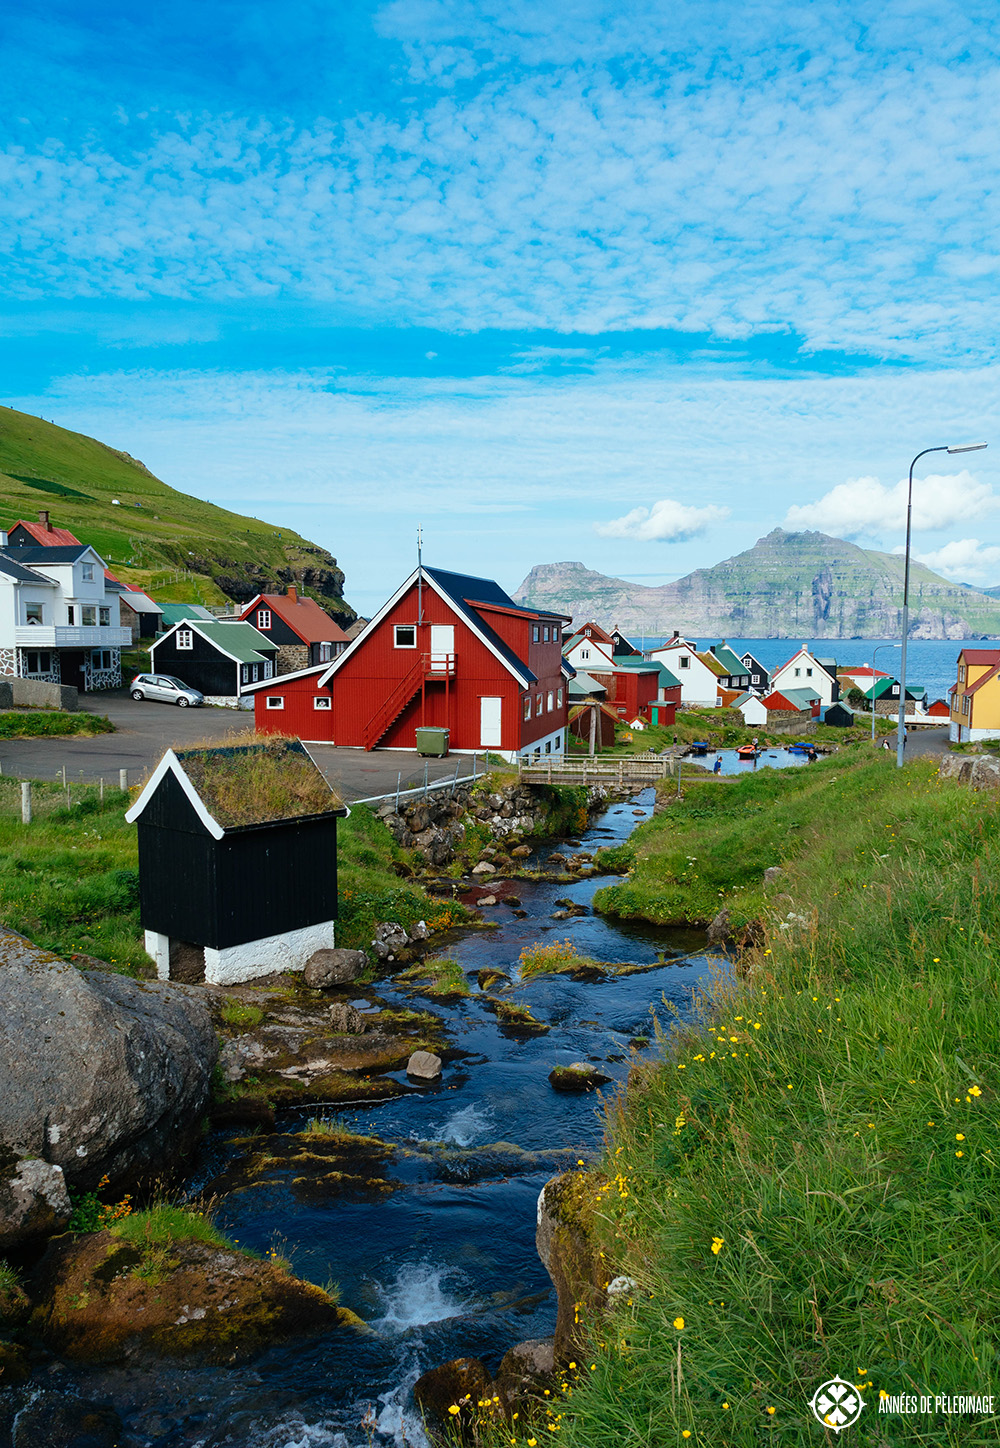 The village of Gjógv in the Faroe Islands